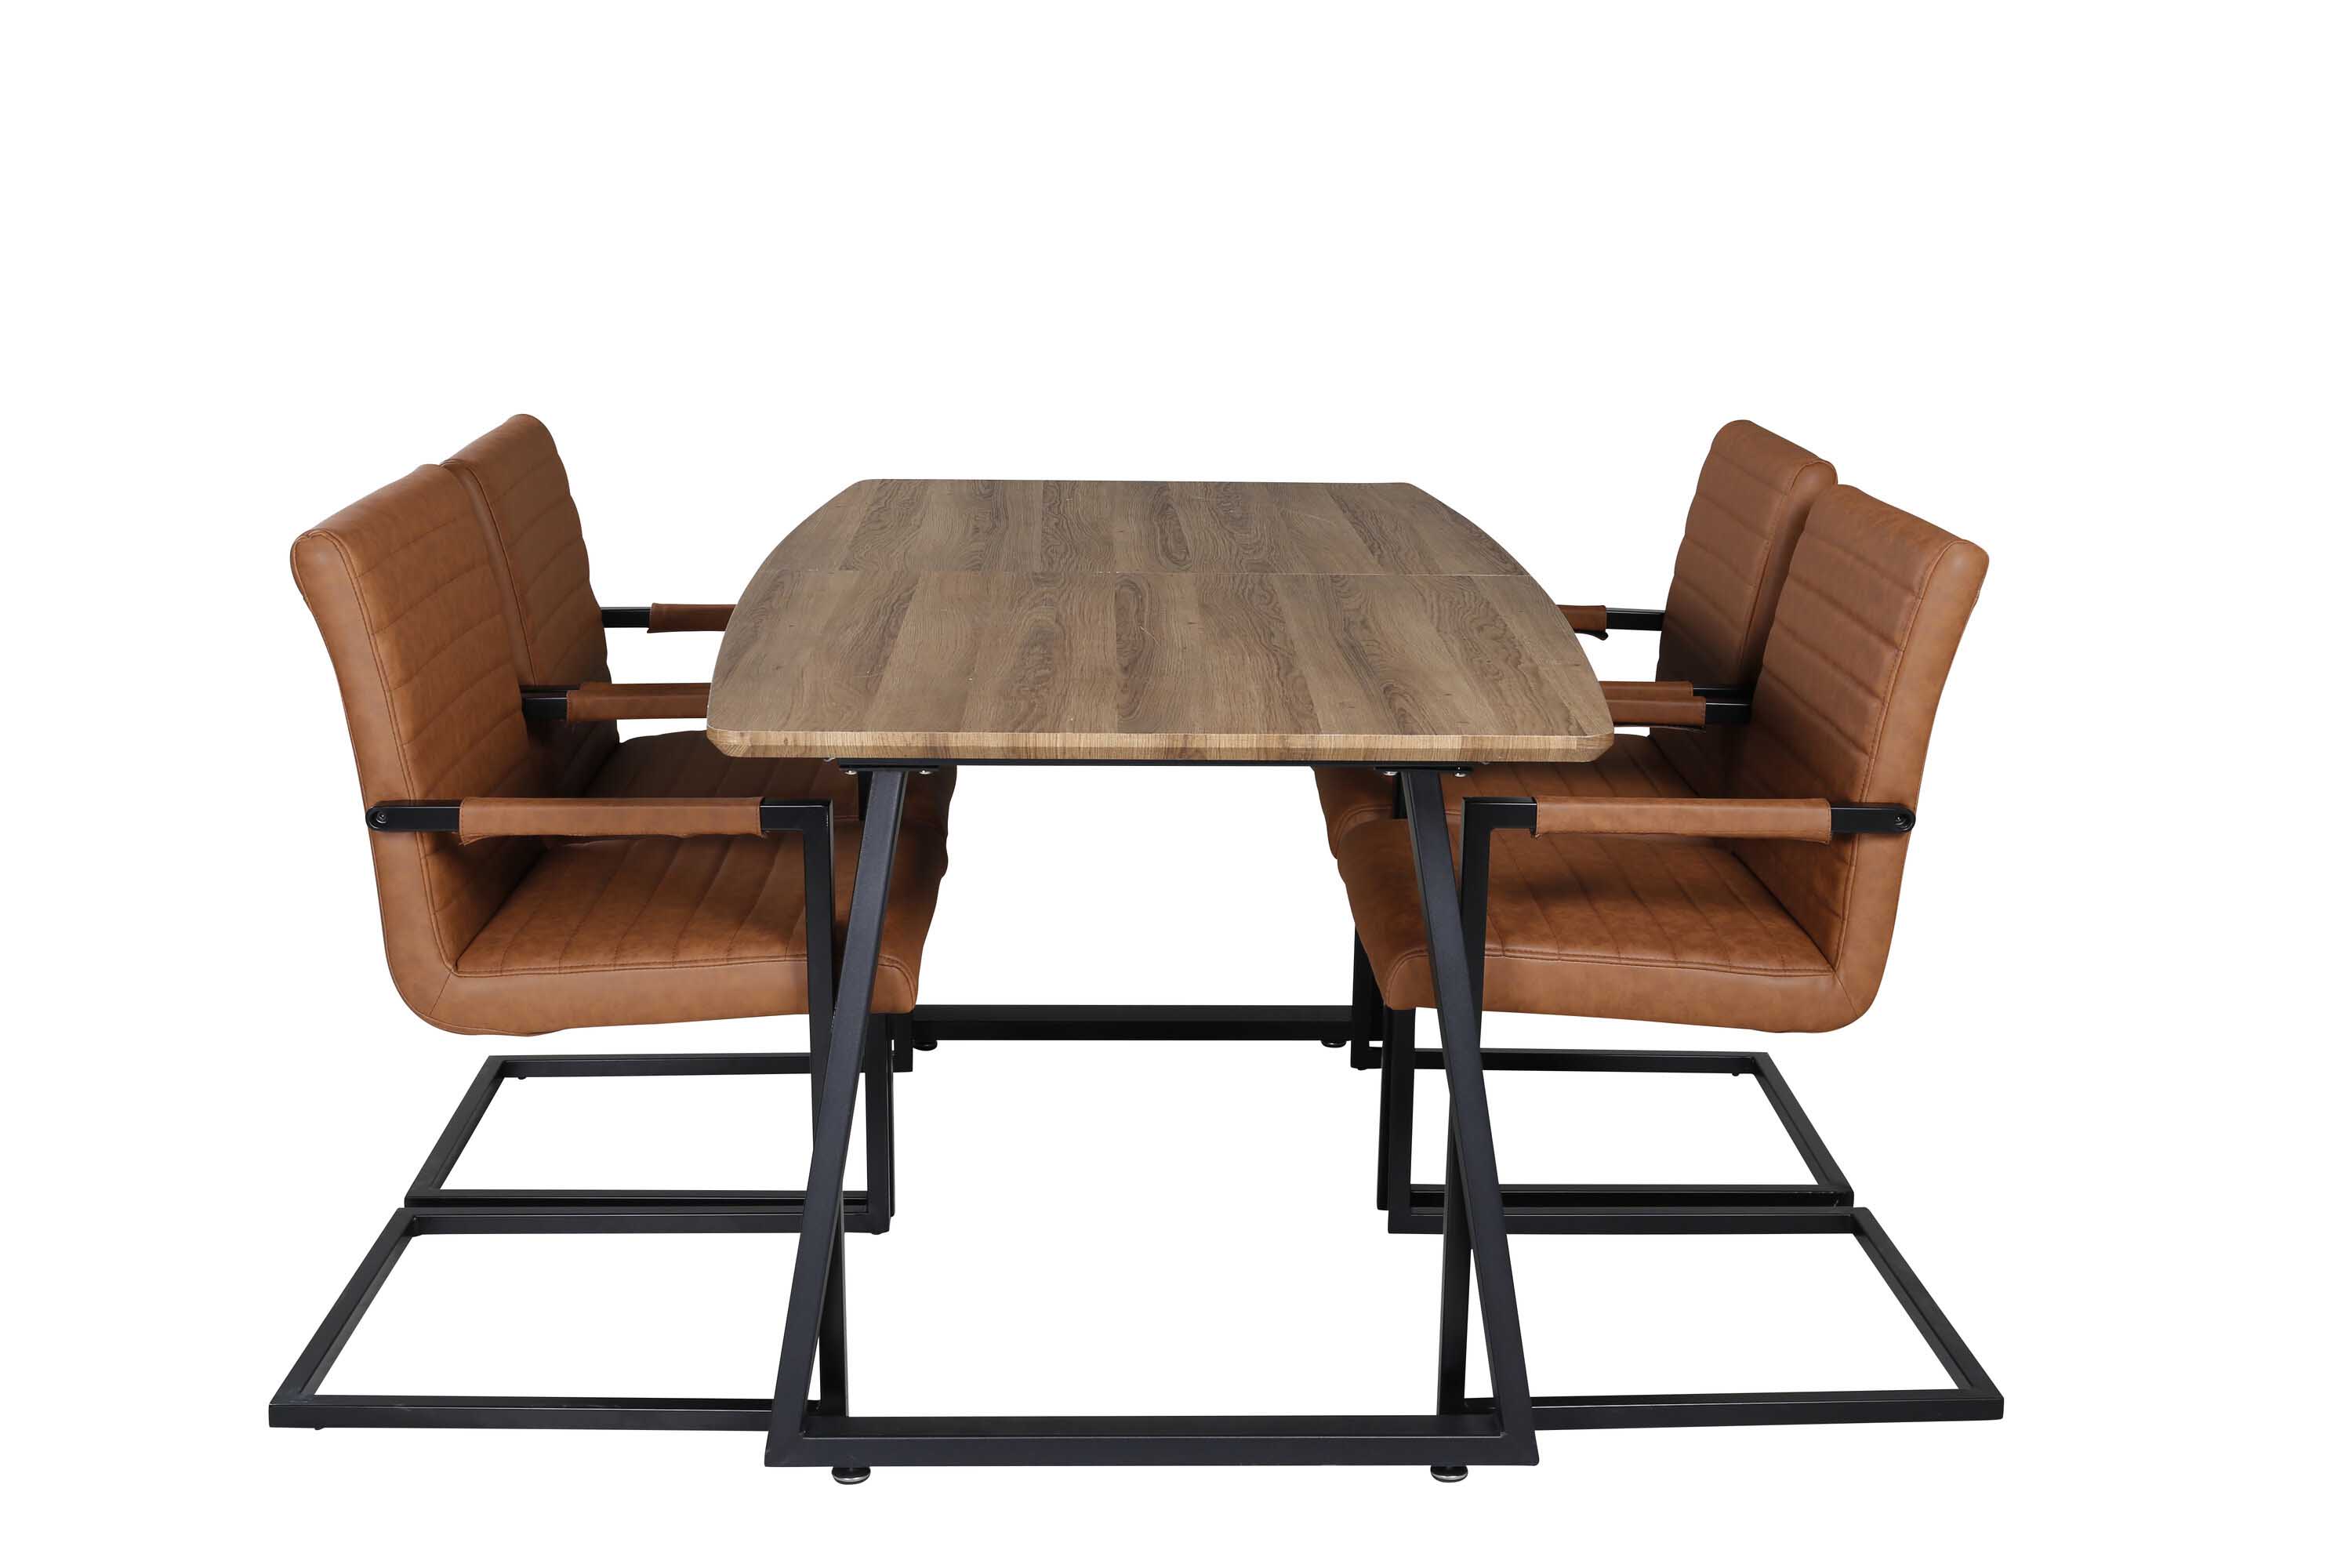 Venture Design Inca & Art spisebordssæt Natur/sort 4 st stole & borde 160 x 85 cm